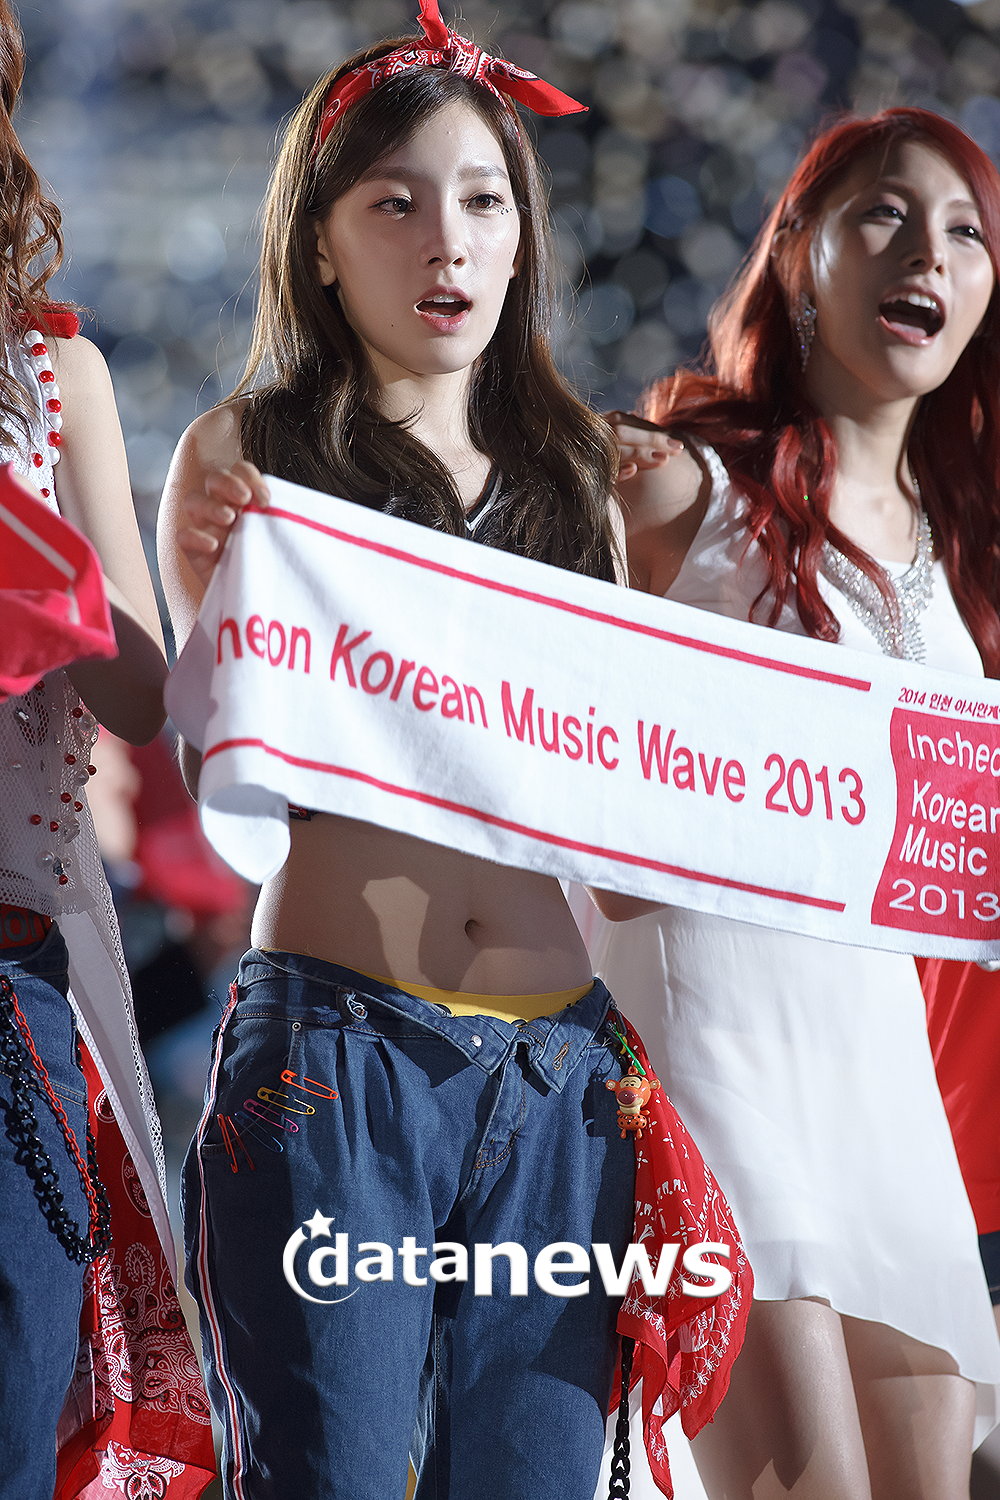 [PIC][01-09-2013]Hình ảnh mới nhất từ "Incheon Korean Music Wave 2013" của SNSD và MC YulTi vào tối nay - Page 2 274DDC4C52238E3317C2E8